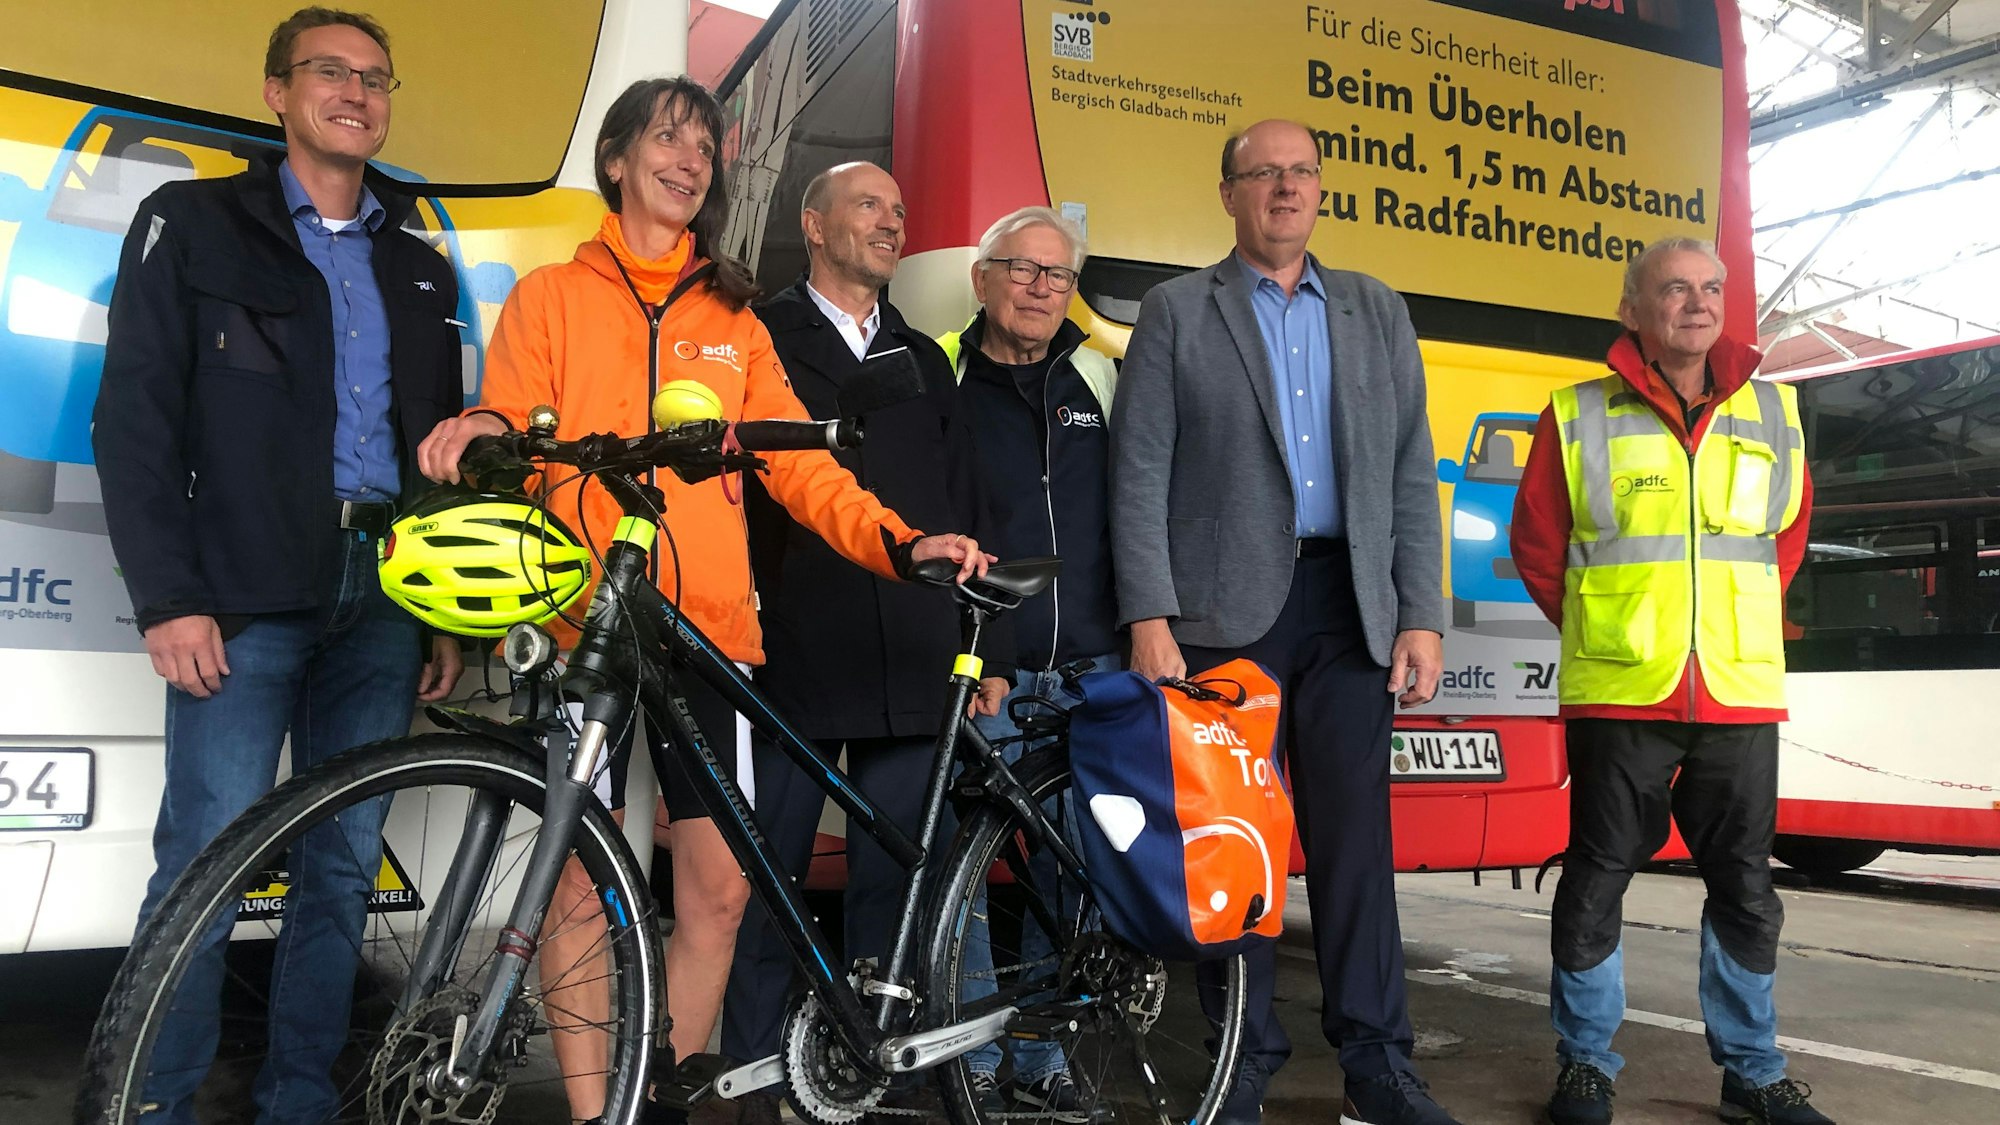 Mitglieder von Gladbacher Stadtverkehrsgesellschaft, Allgemeiner Deutscher Fahrradclub, RVK und Wupsi stehen bei der Vorstellung ihrer gemeinsamen Aktion zu mehr Sicherheit von Radfahrern nebeneinander.